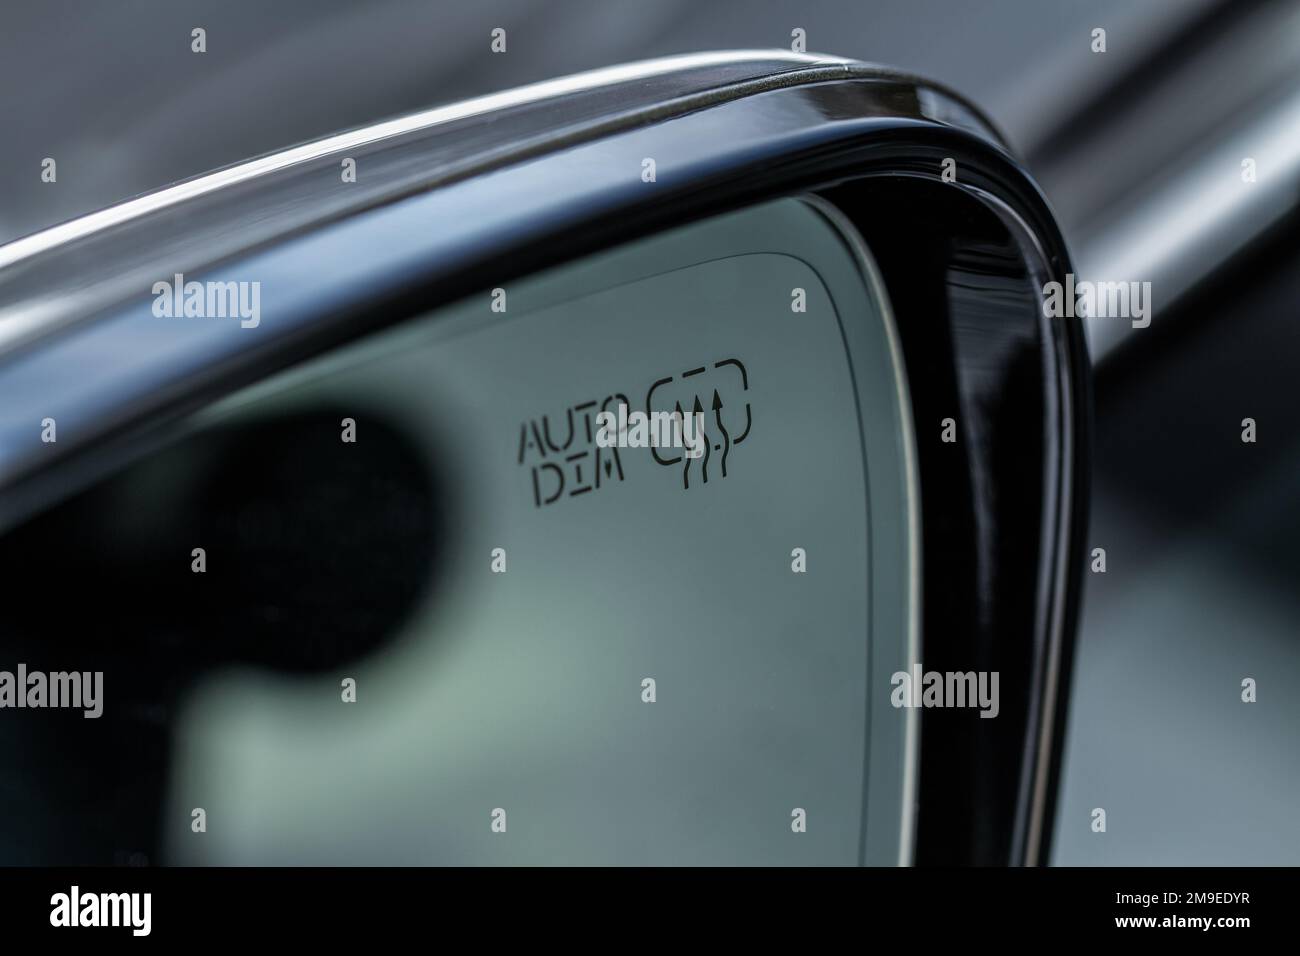 Symbol der Heckscheibenheizung in EINEM Auto Stockfotografie - Alamy